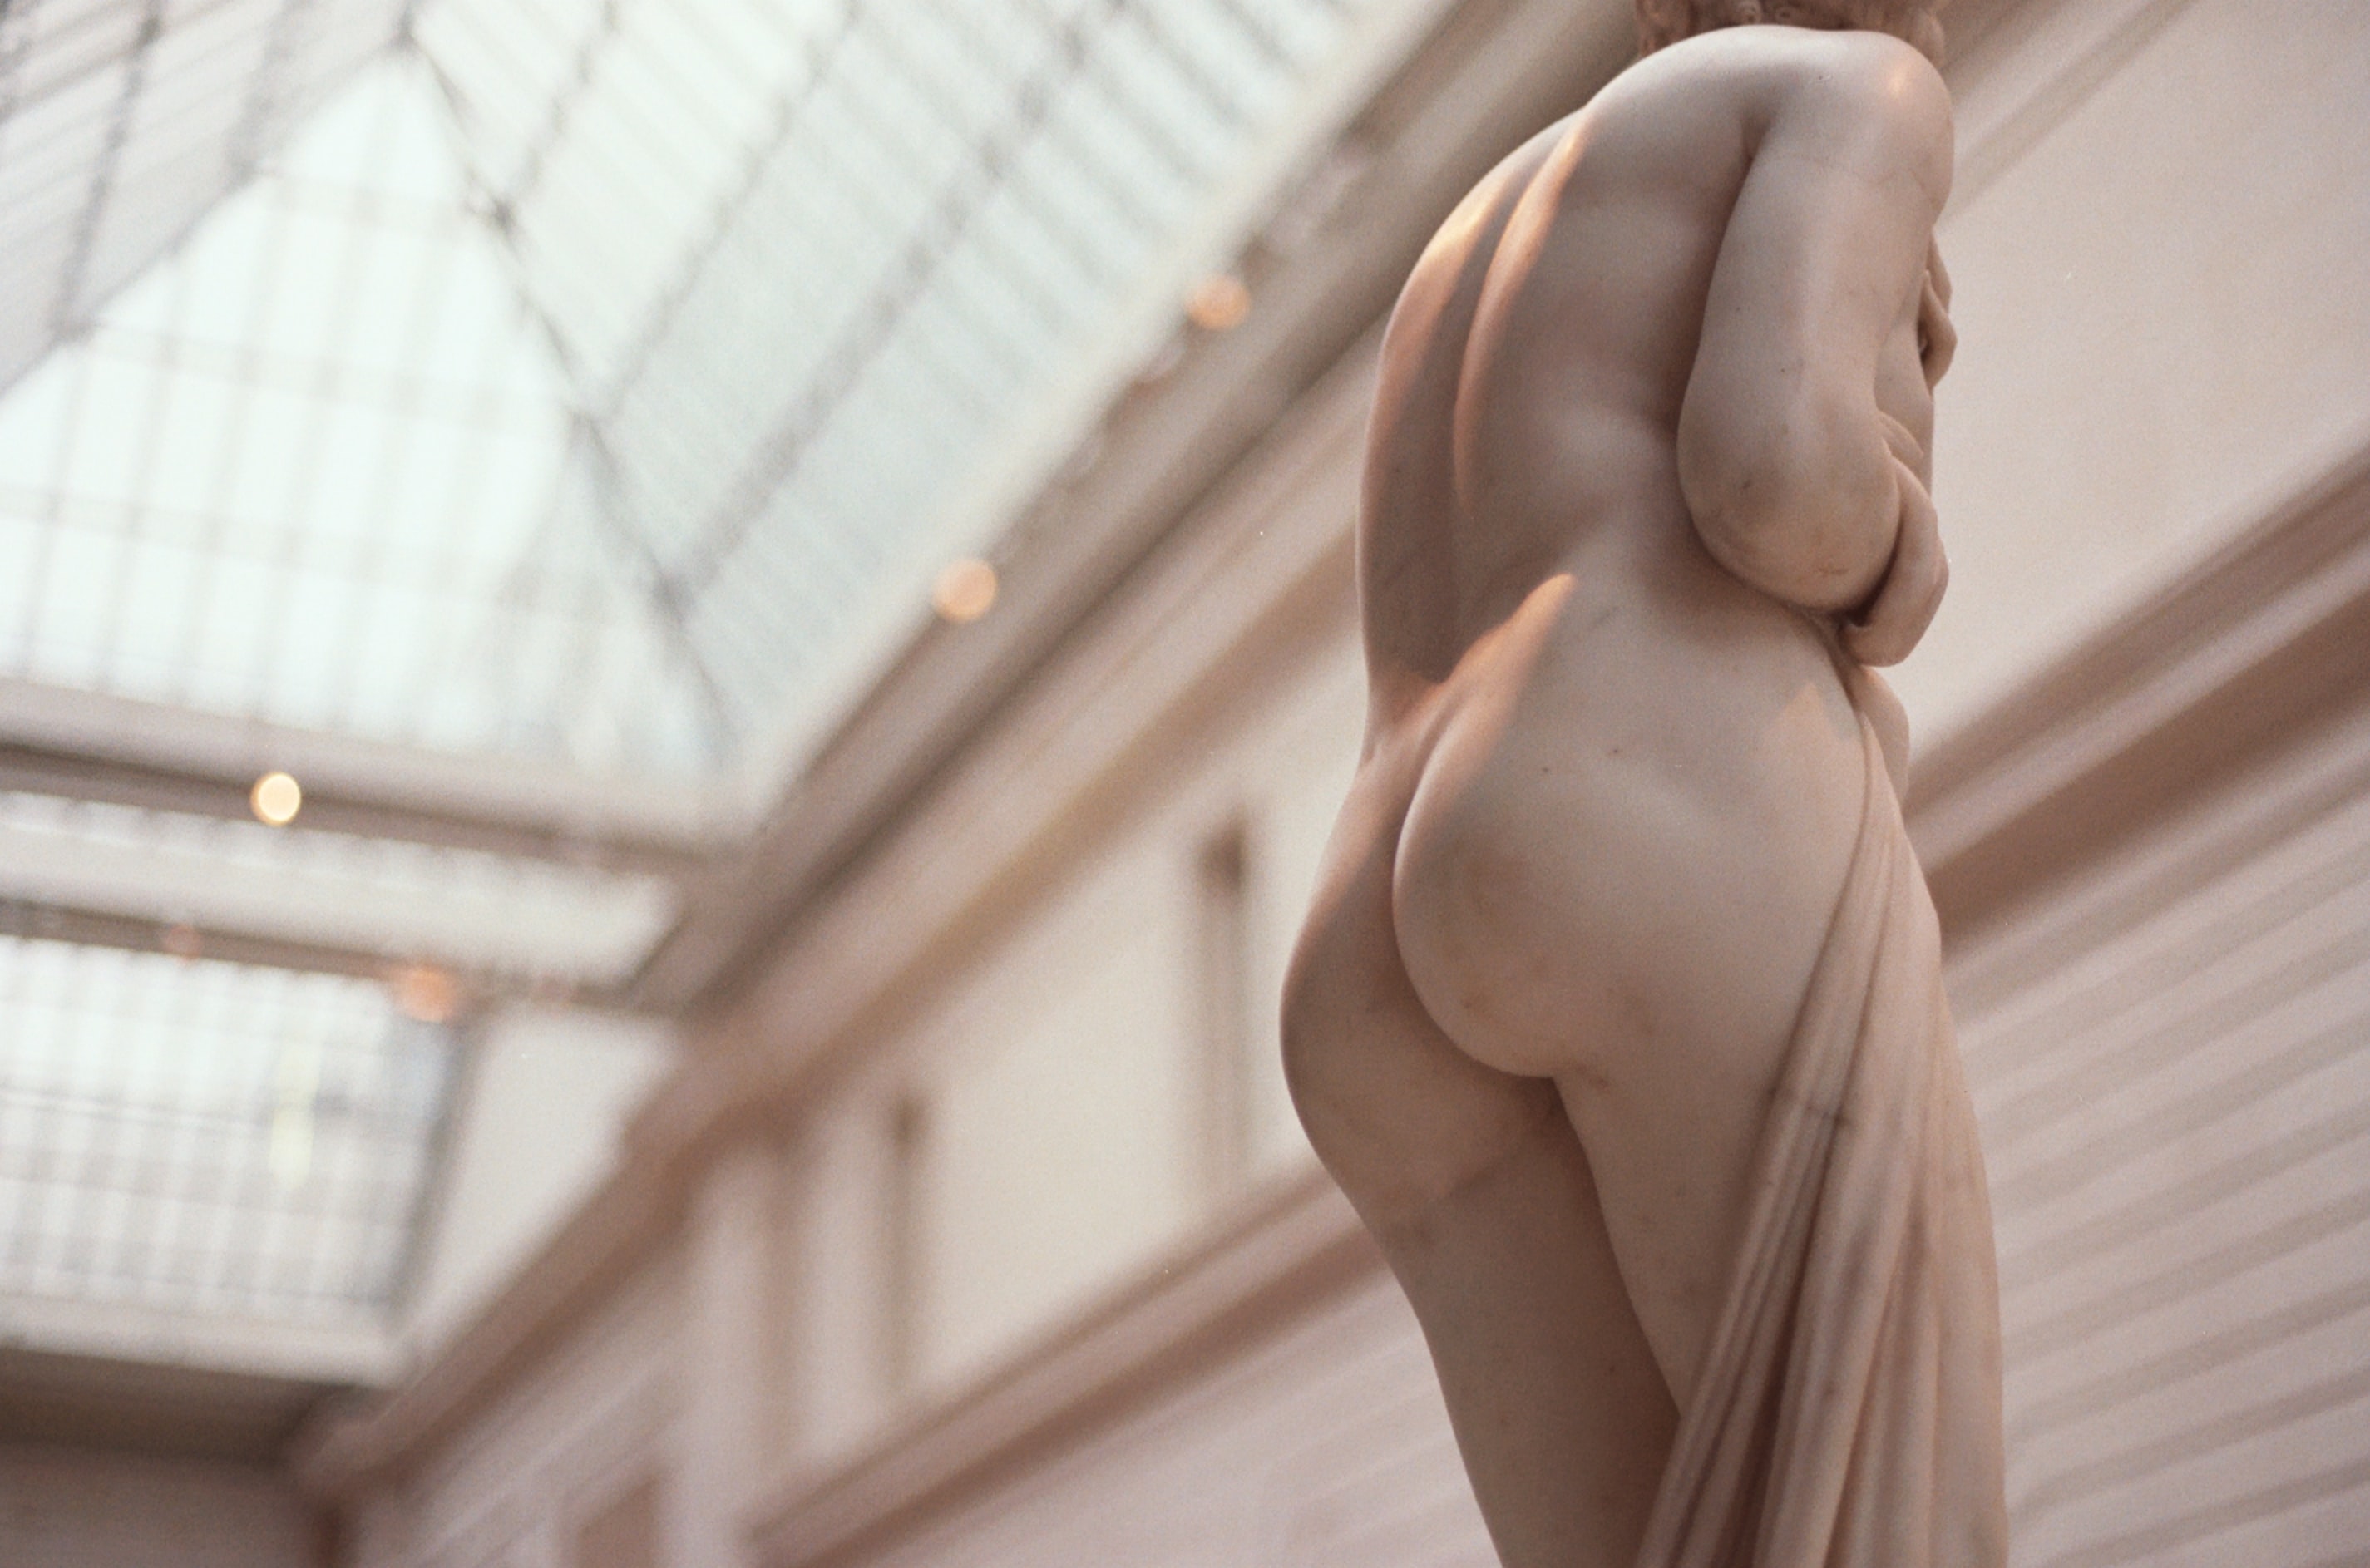 Un compte OnlyFans 18+ diffuse des nudes ... du musée de Vienne